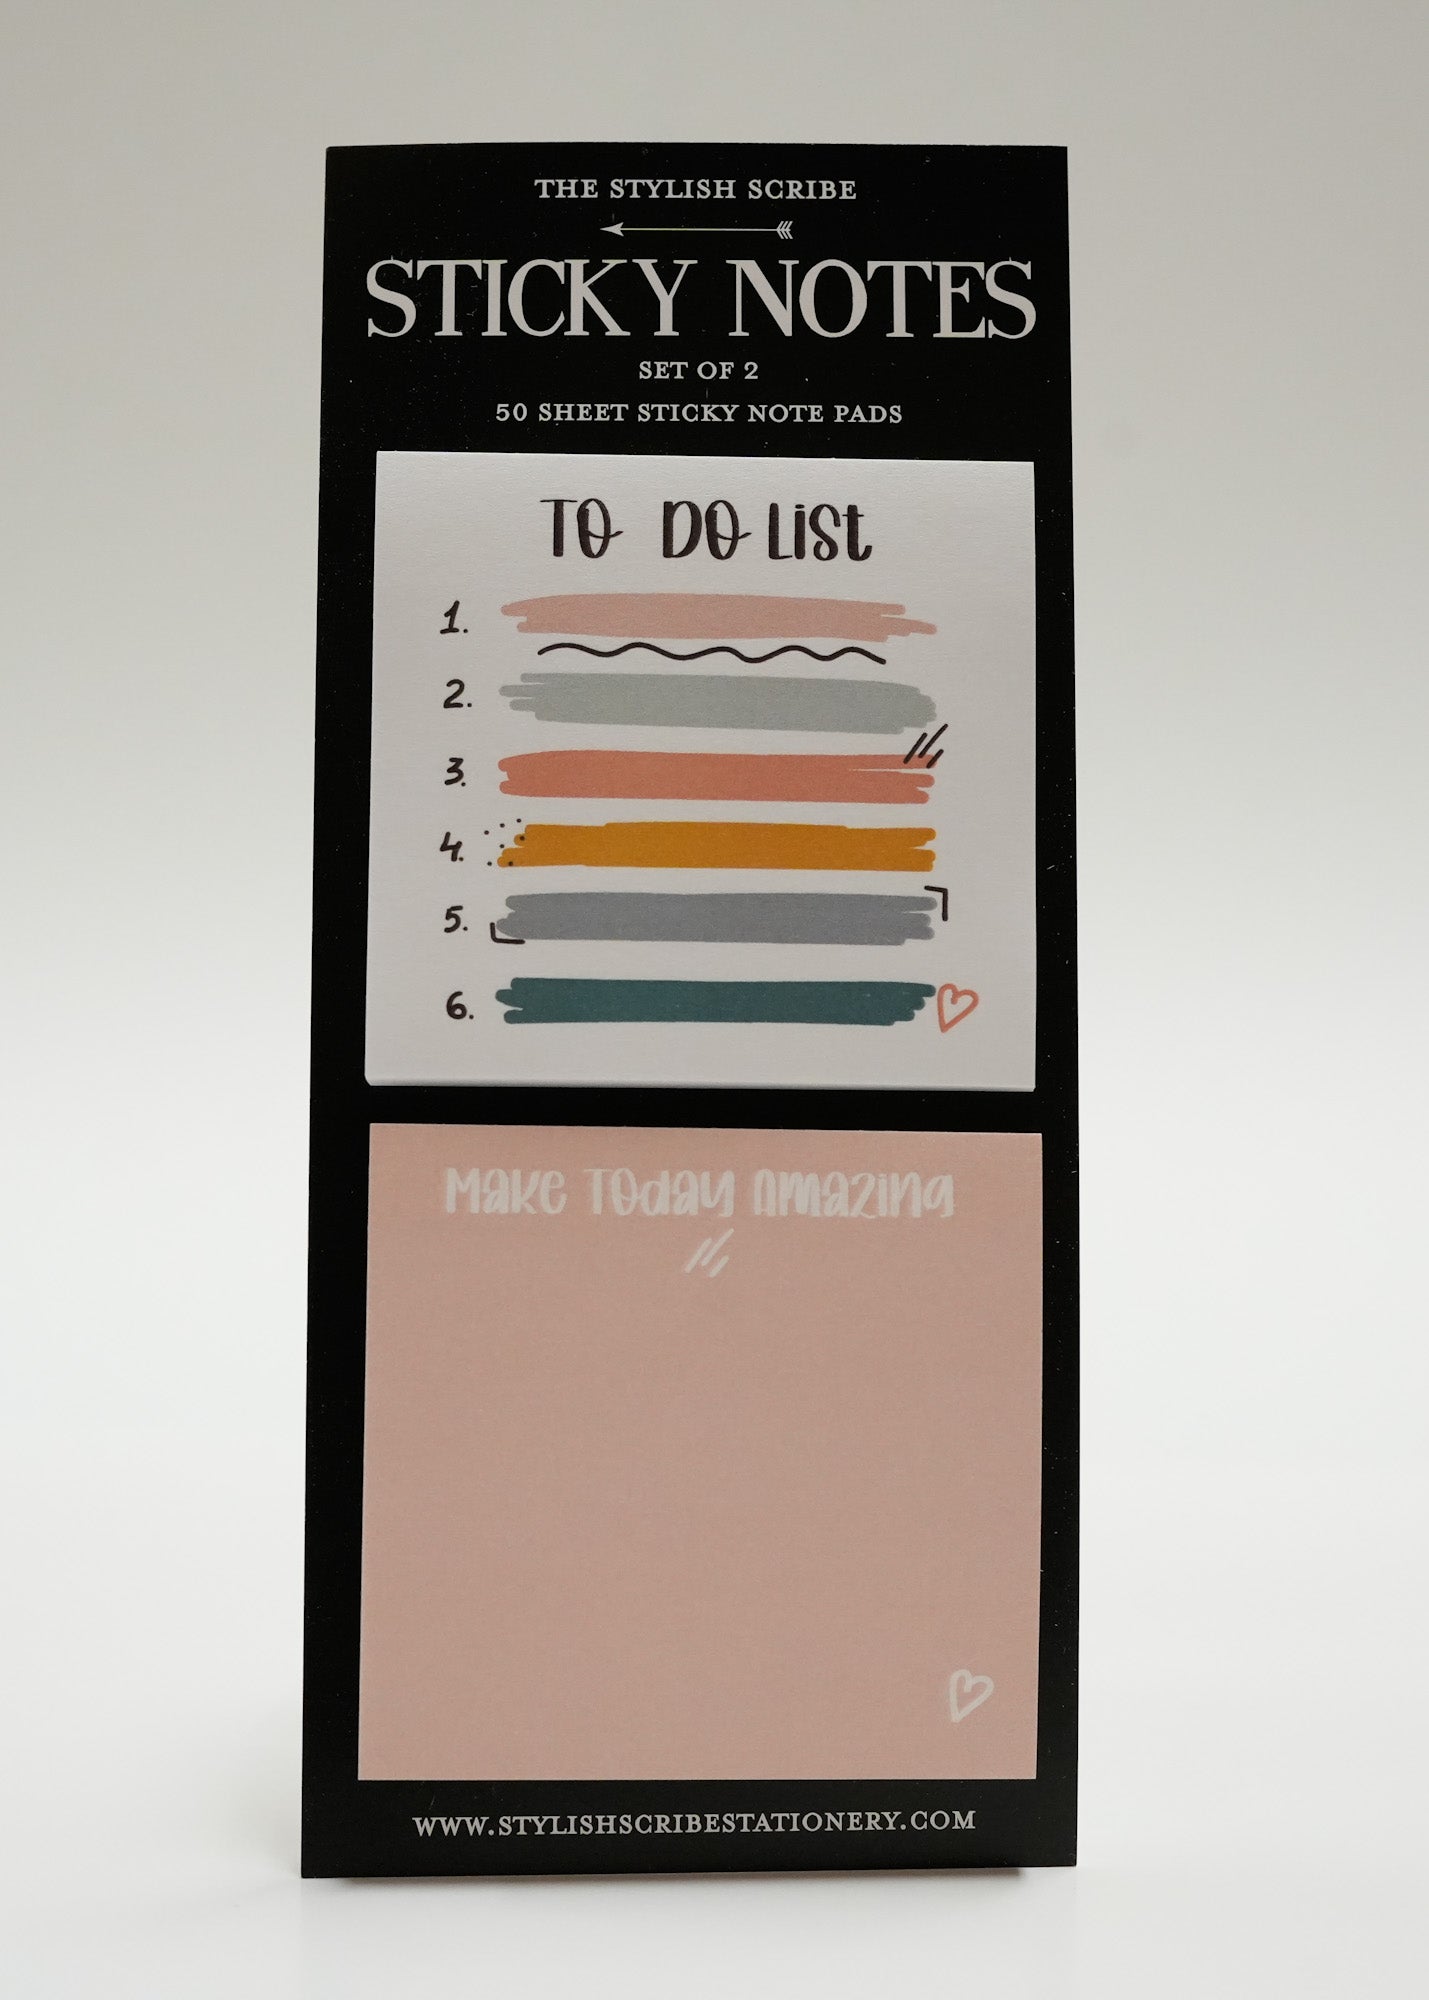 To Do List sticky note set